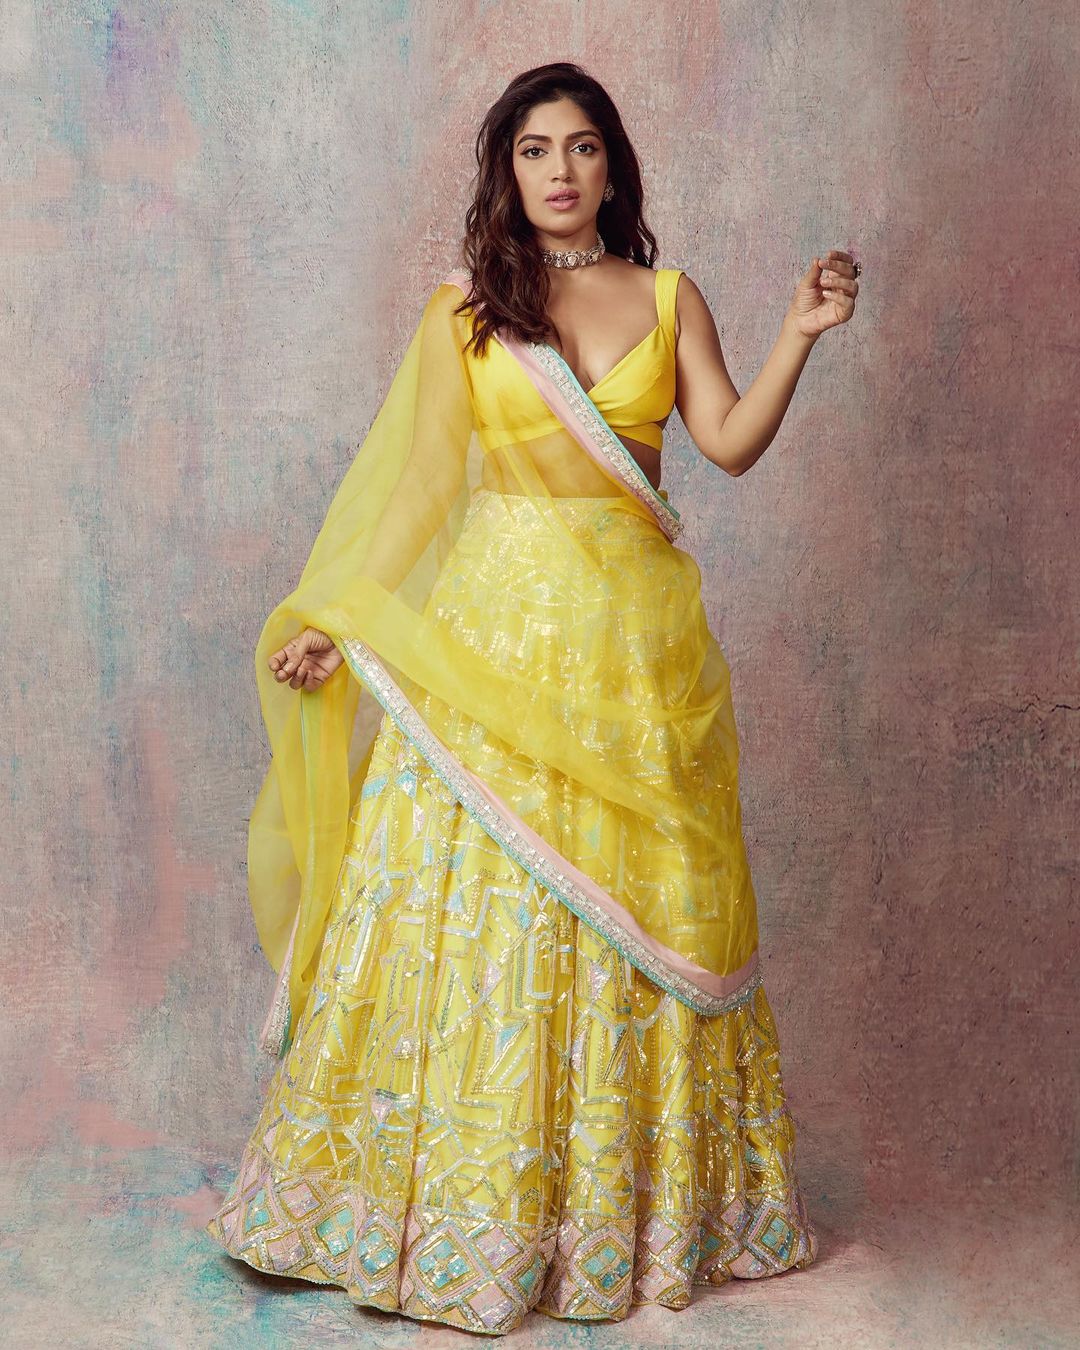 Bhumi Pednekar looks stunning in the yellow lehenga